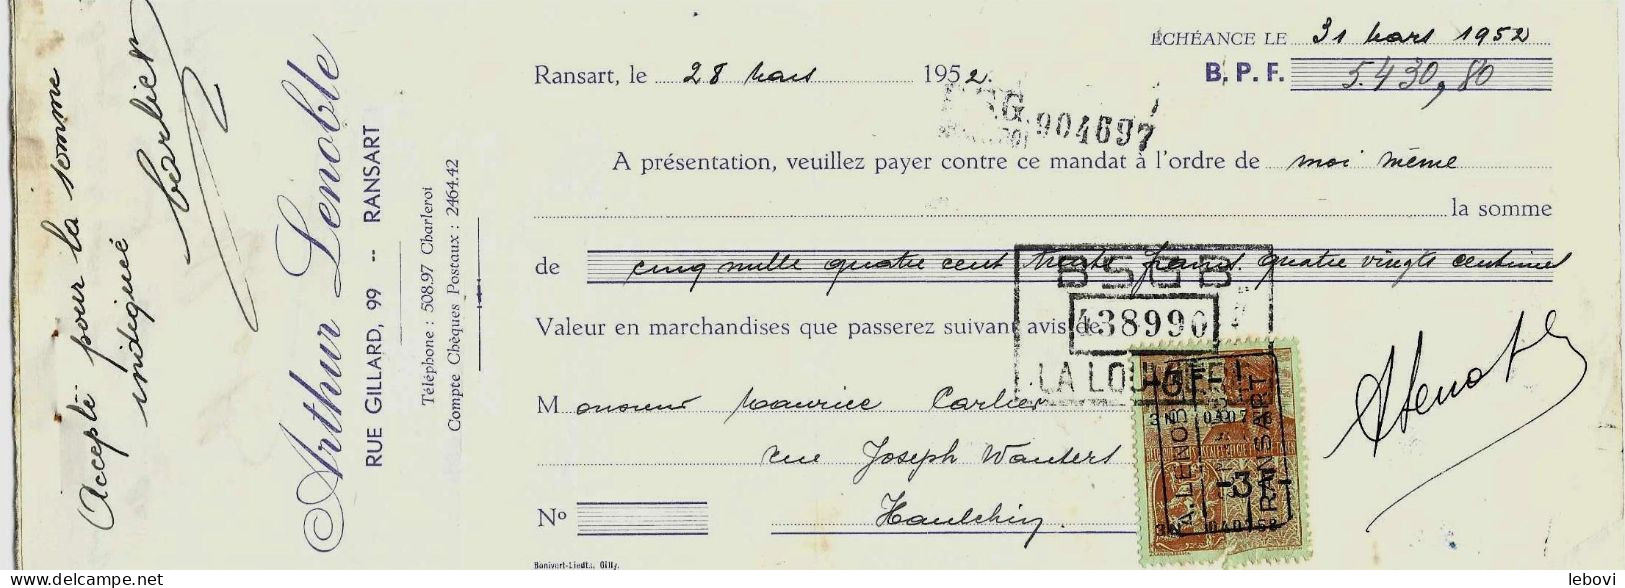 RANSART – Lessiveuses LENOBLE - Facture +lettre De Change (1951/1952) - 1950 - ...